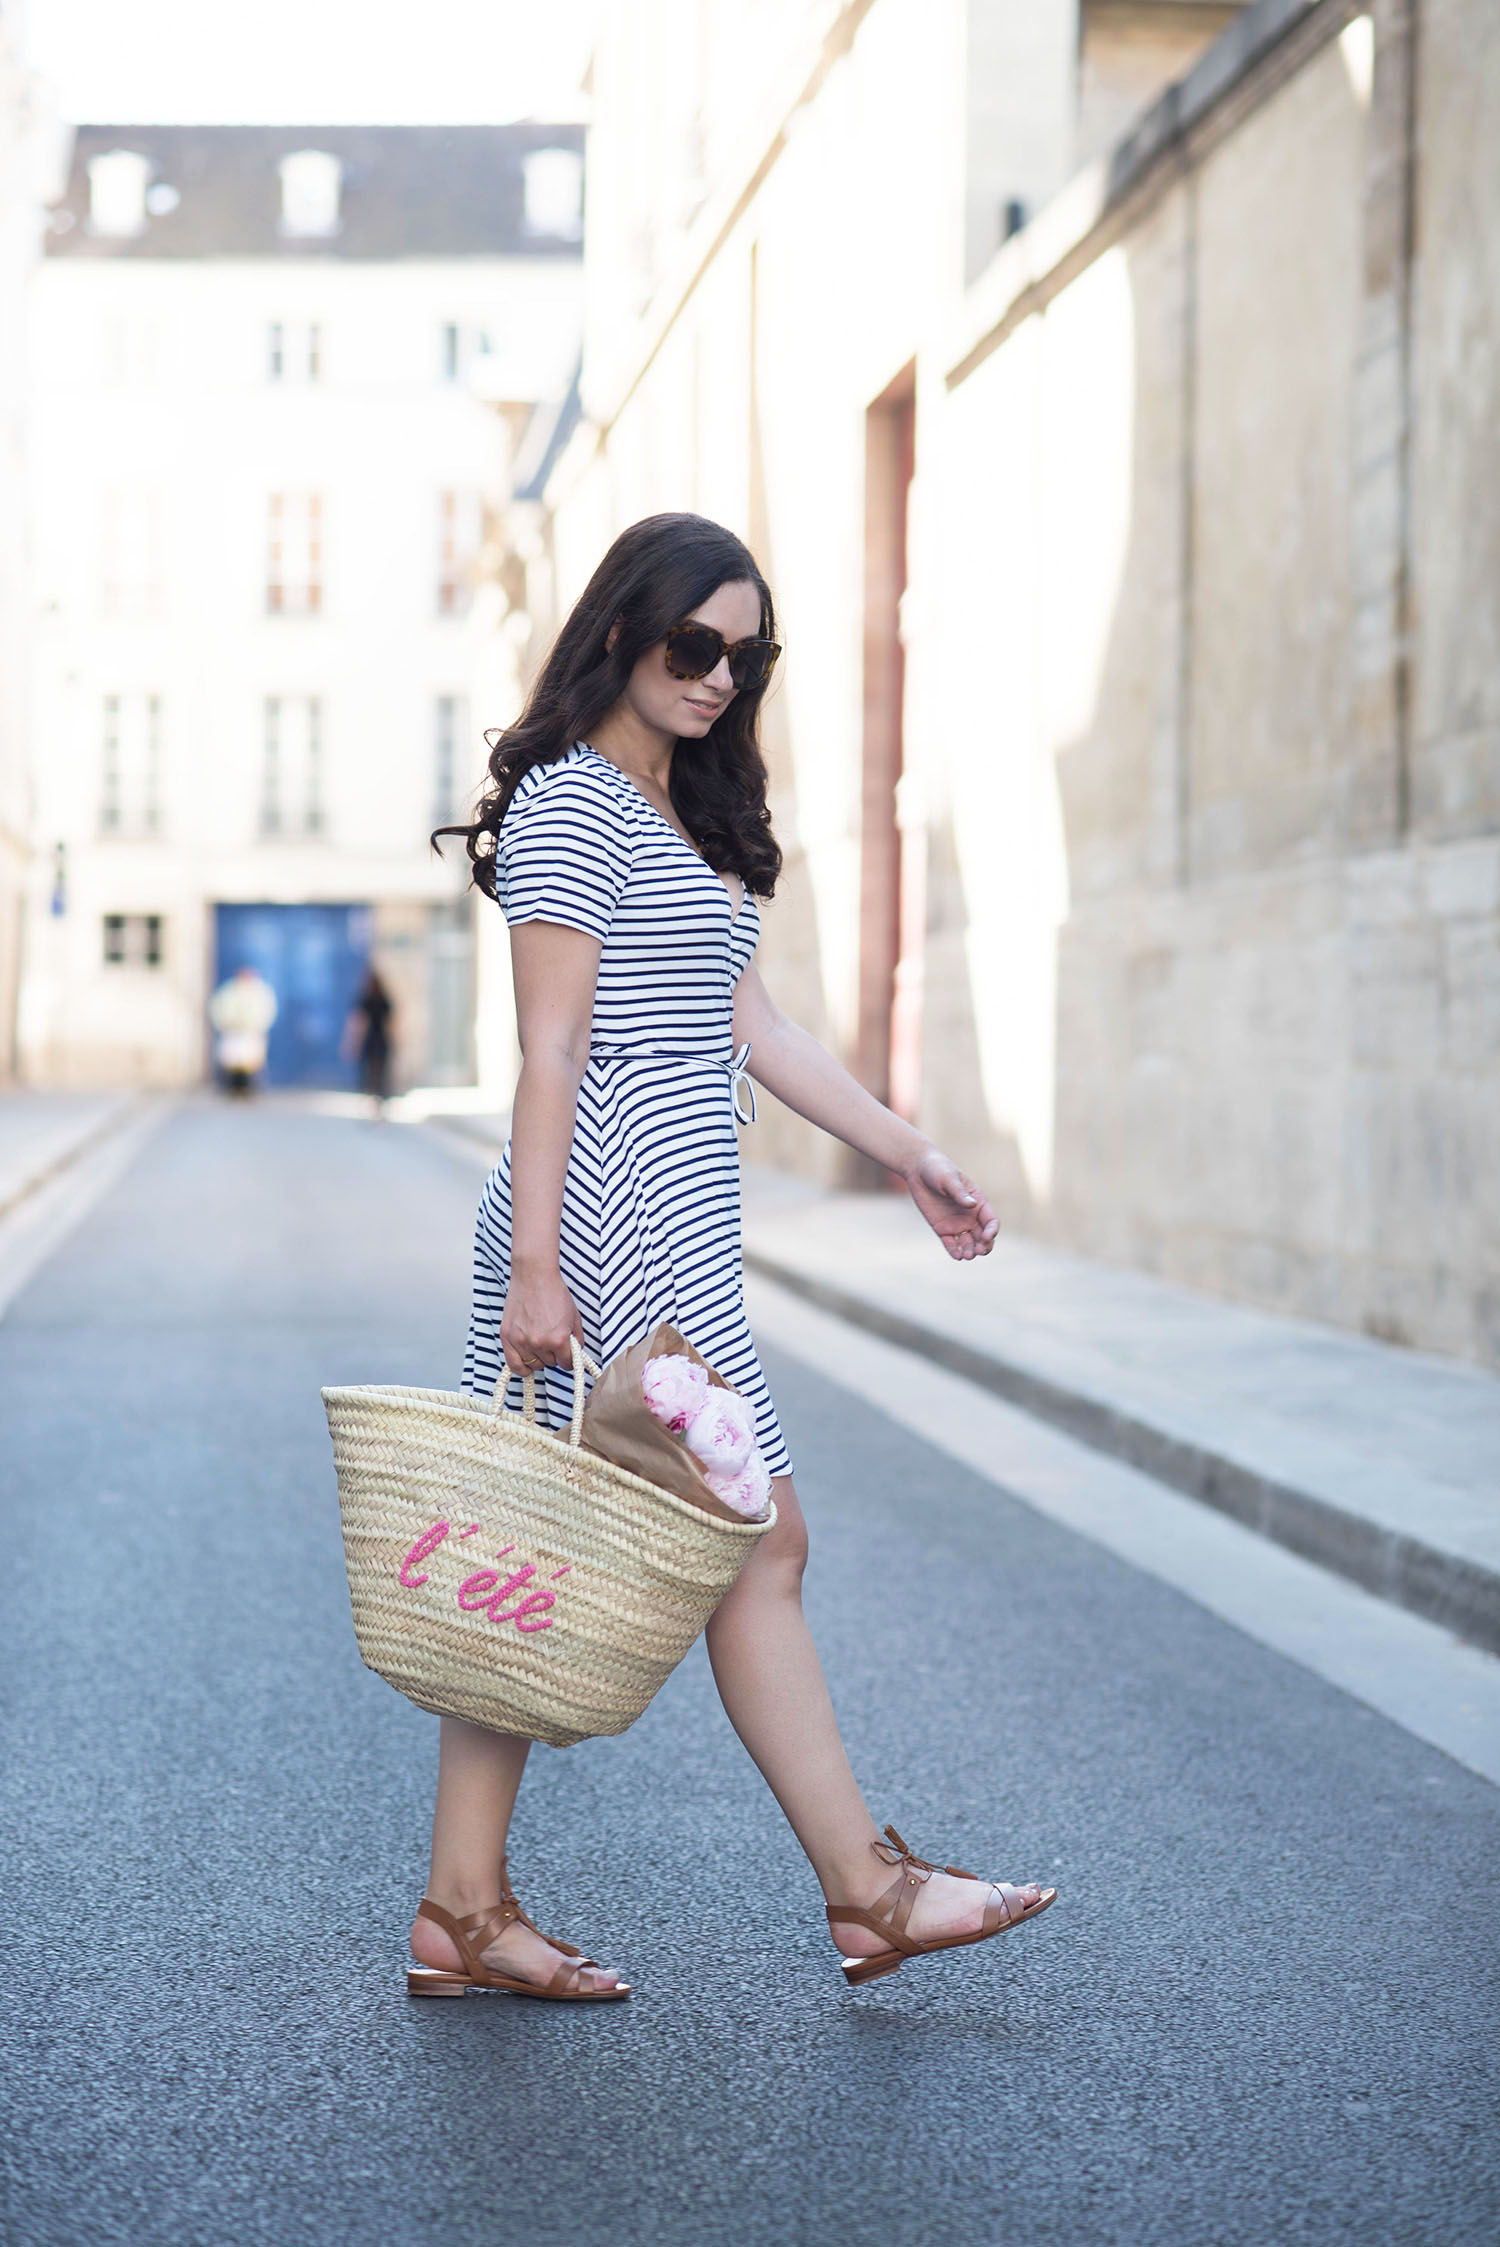 Style blogger Cee Fardoe of Coco & Vera walks in Paris wearing a striped Lovers + Friends dress